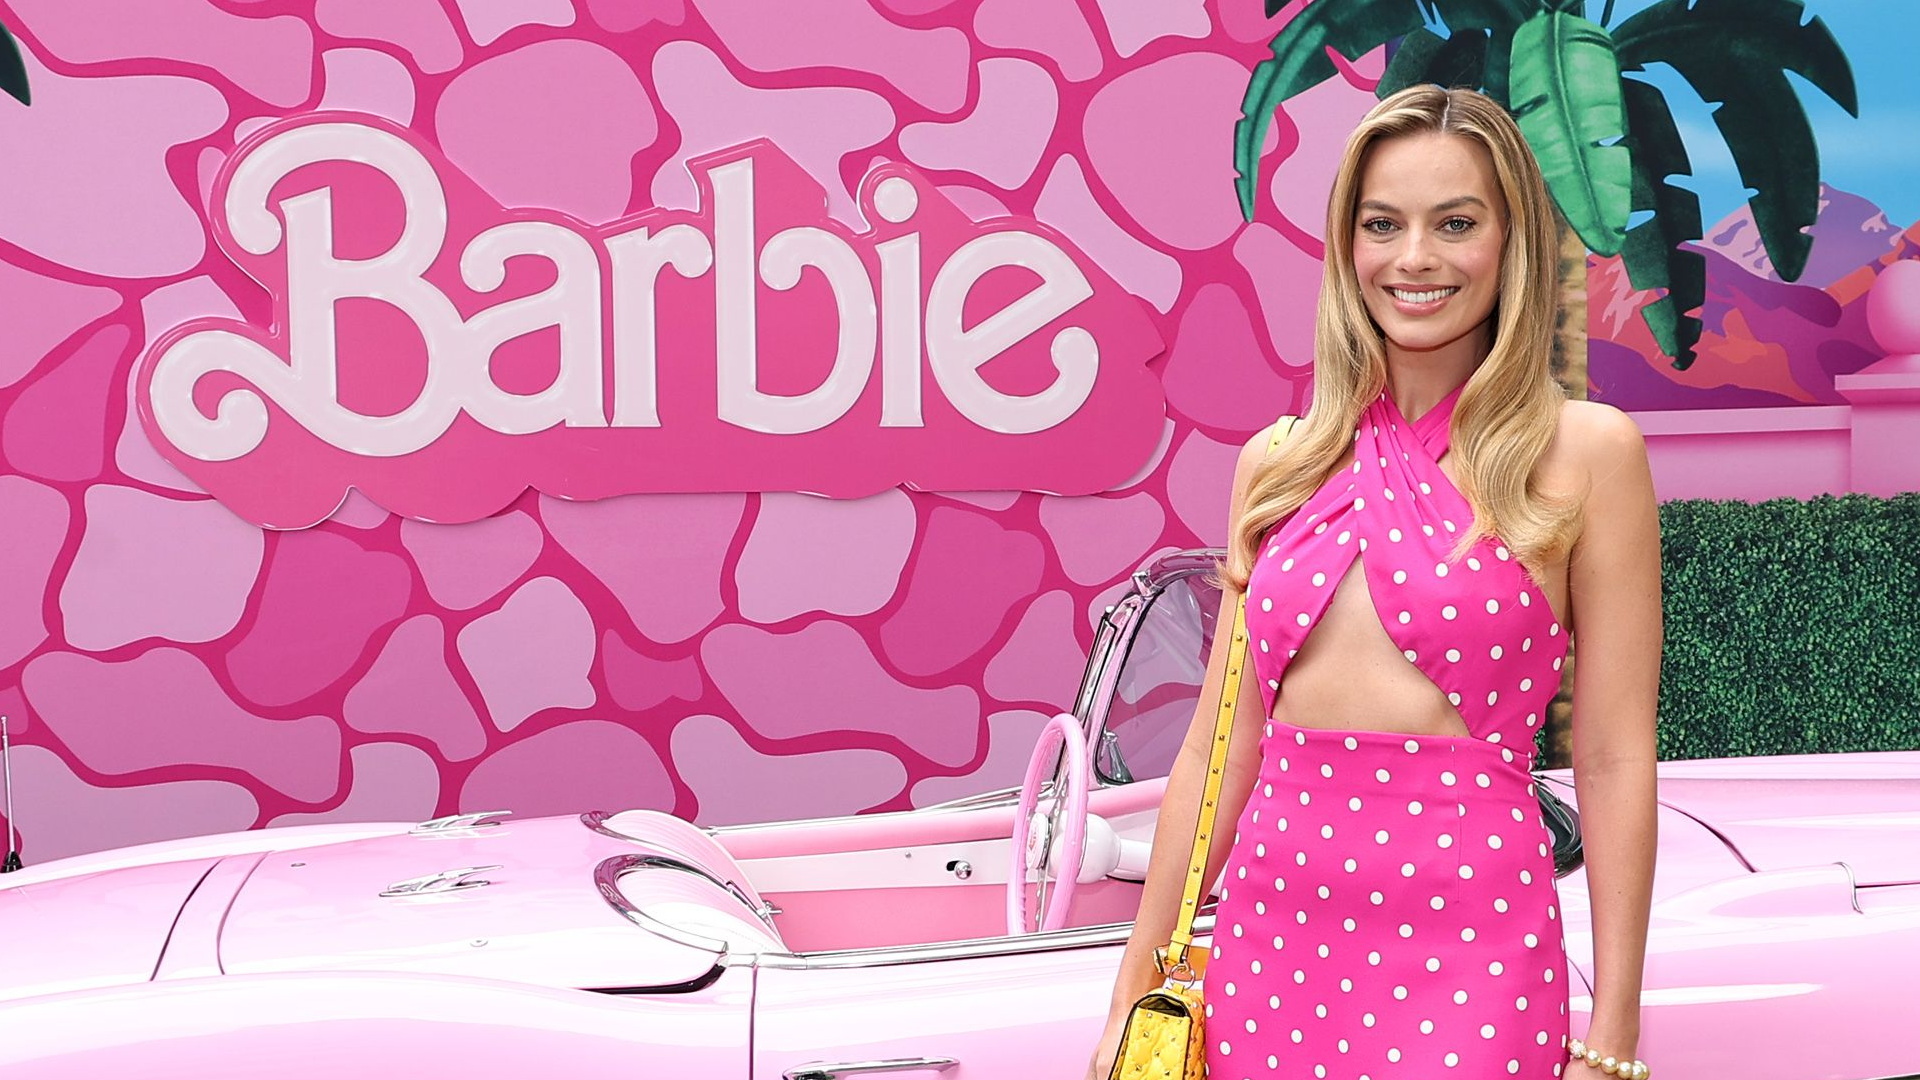 Vuelve el look Barbie: el rosa se convierte en el color del verano gracias a Margot Robbie